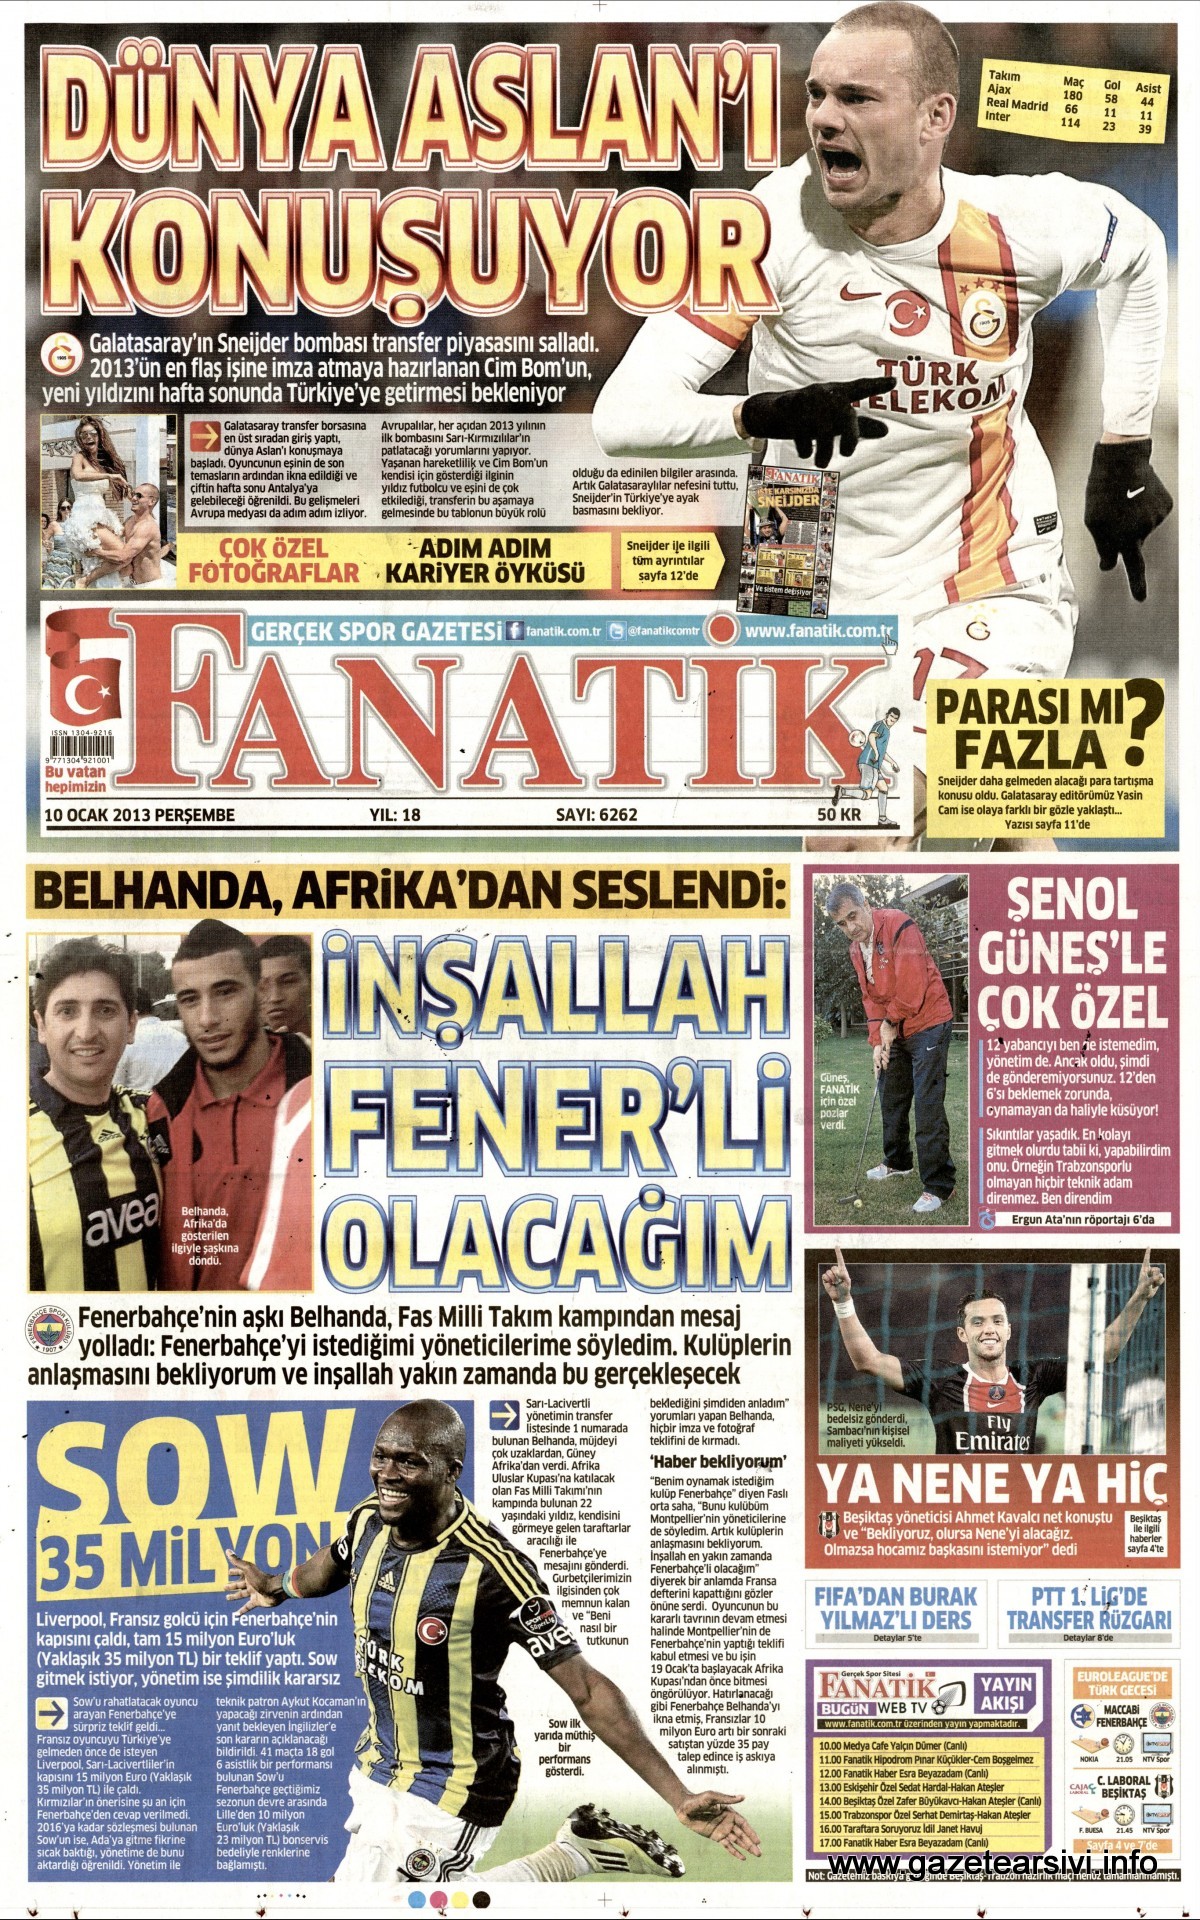 Fanatik Gazetesi 10.01.2013 Manşeti | www.gazetearşivi.info